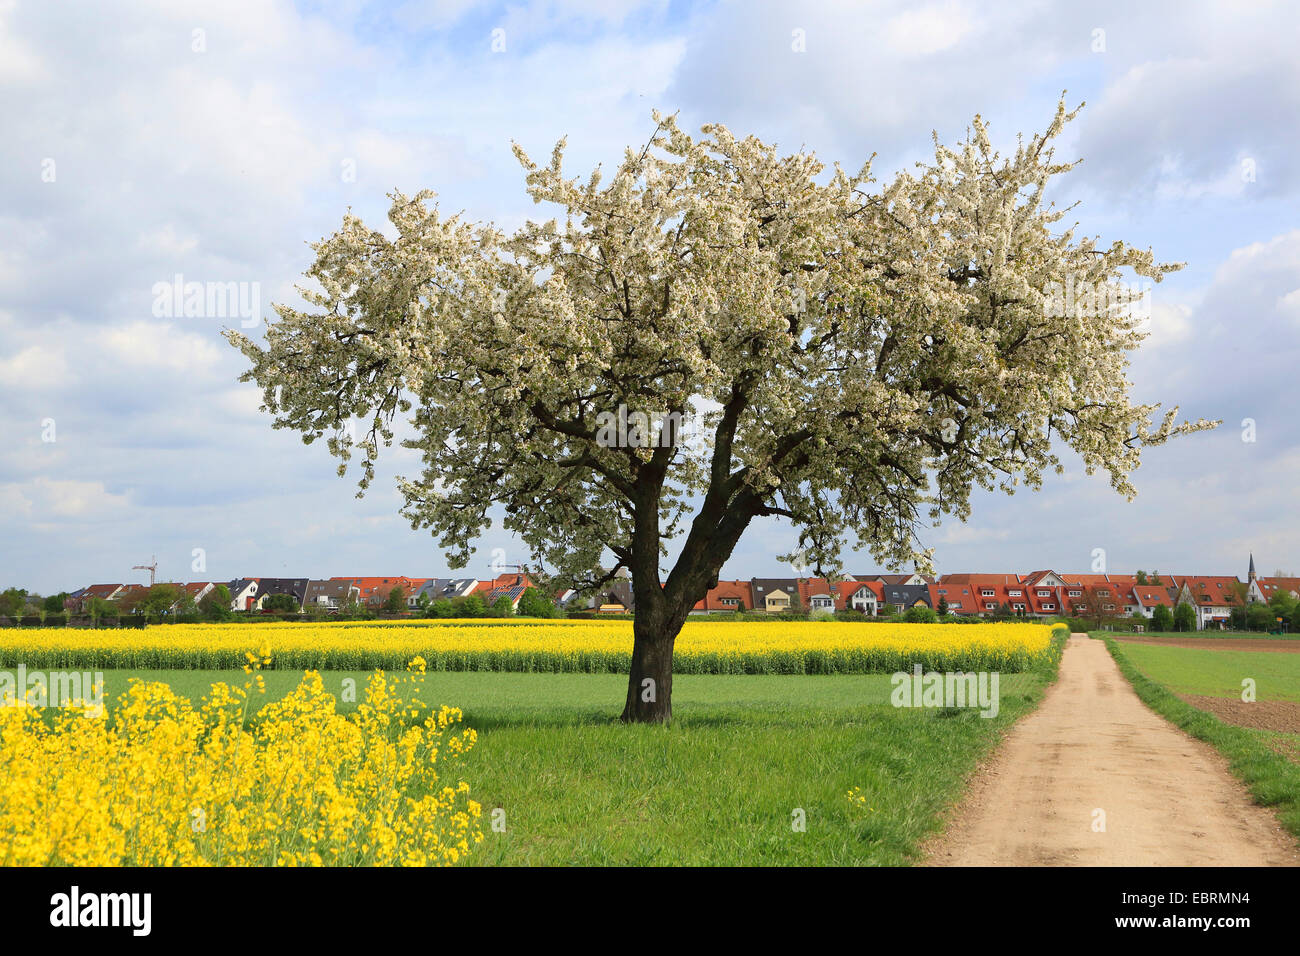 Cherry tree, Sweet cherry (Prunus avium), blooming cherry tree in field landscape, Germany Stock Photo